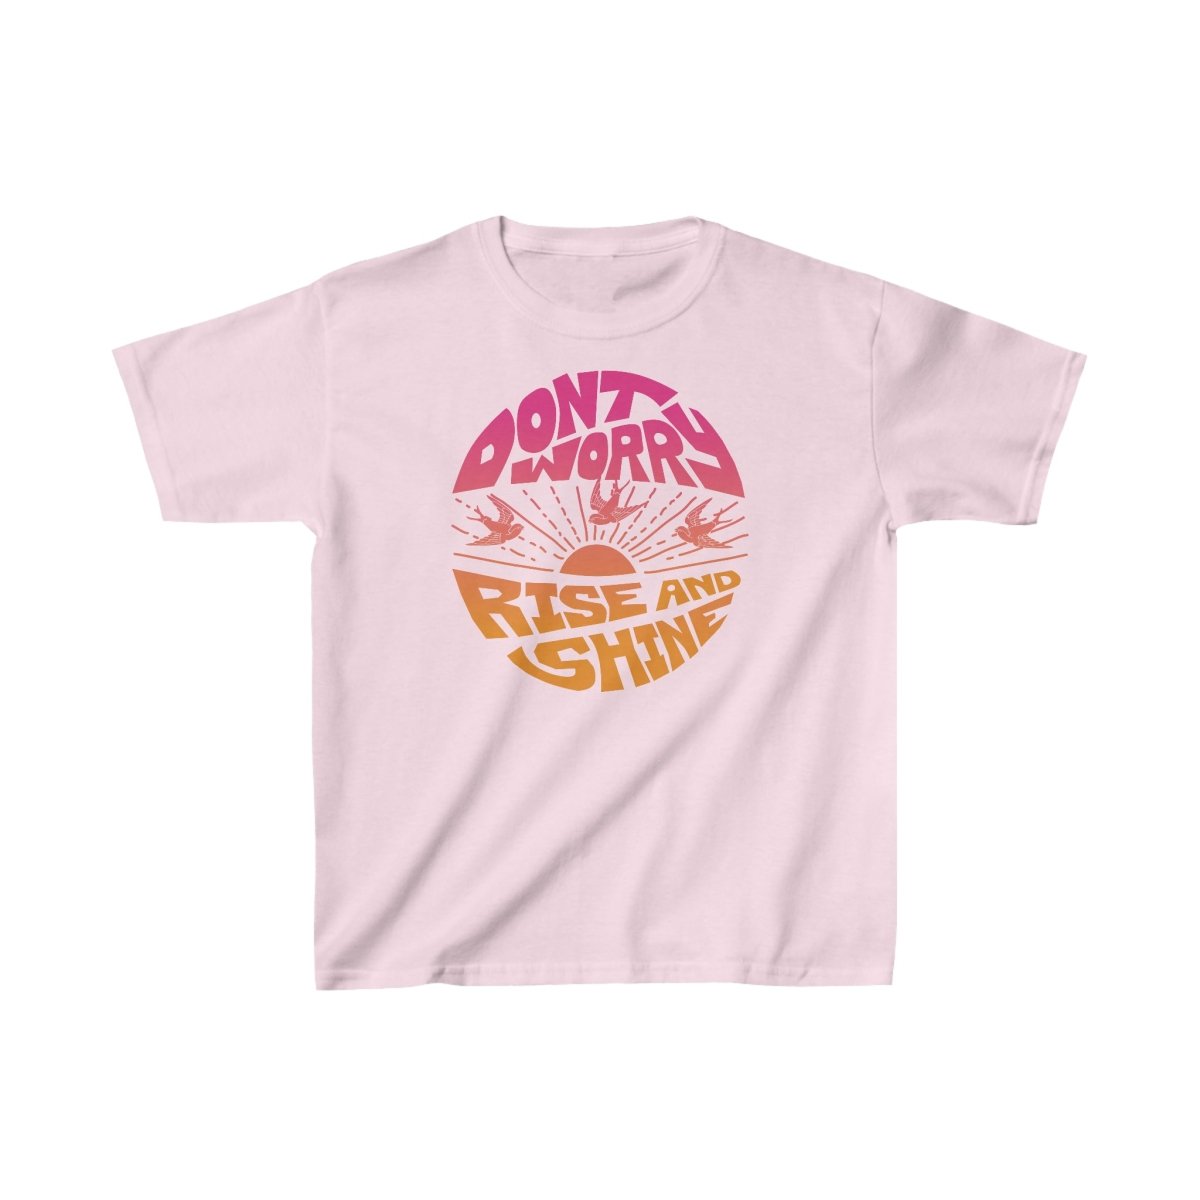 Don't Worry Kids T-Shirt, Zen, Peace, Love Gift